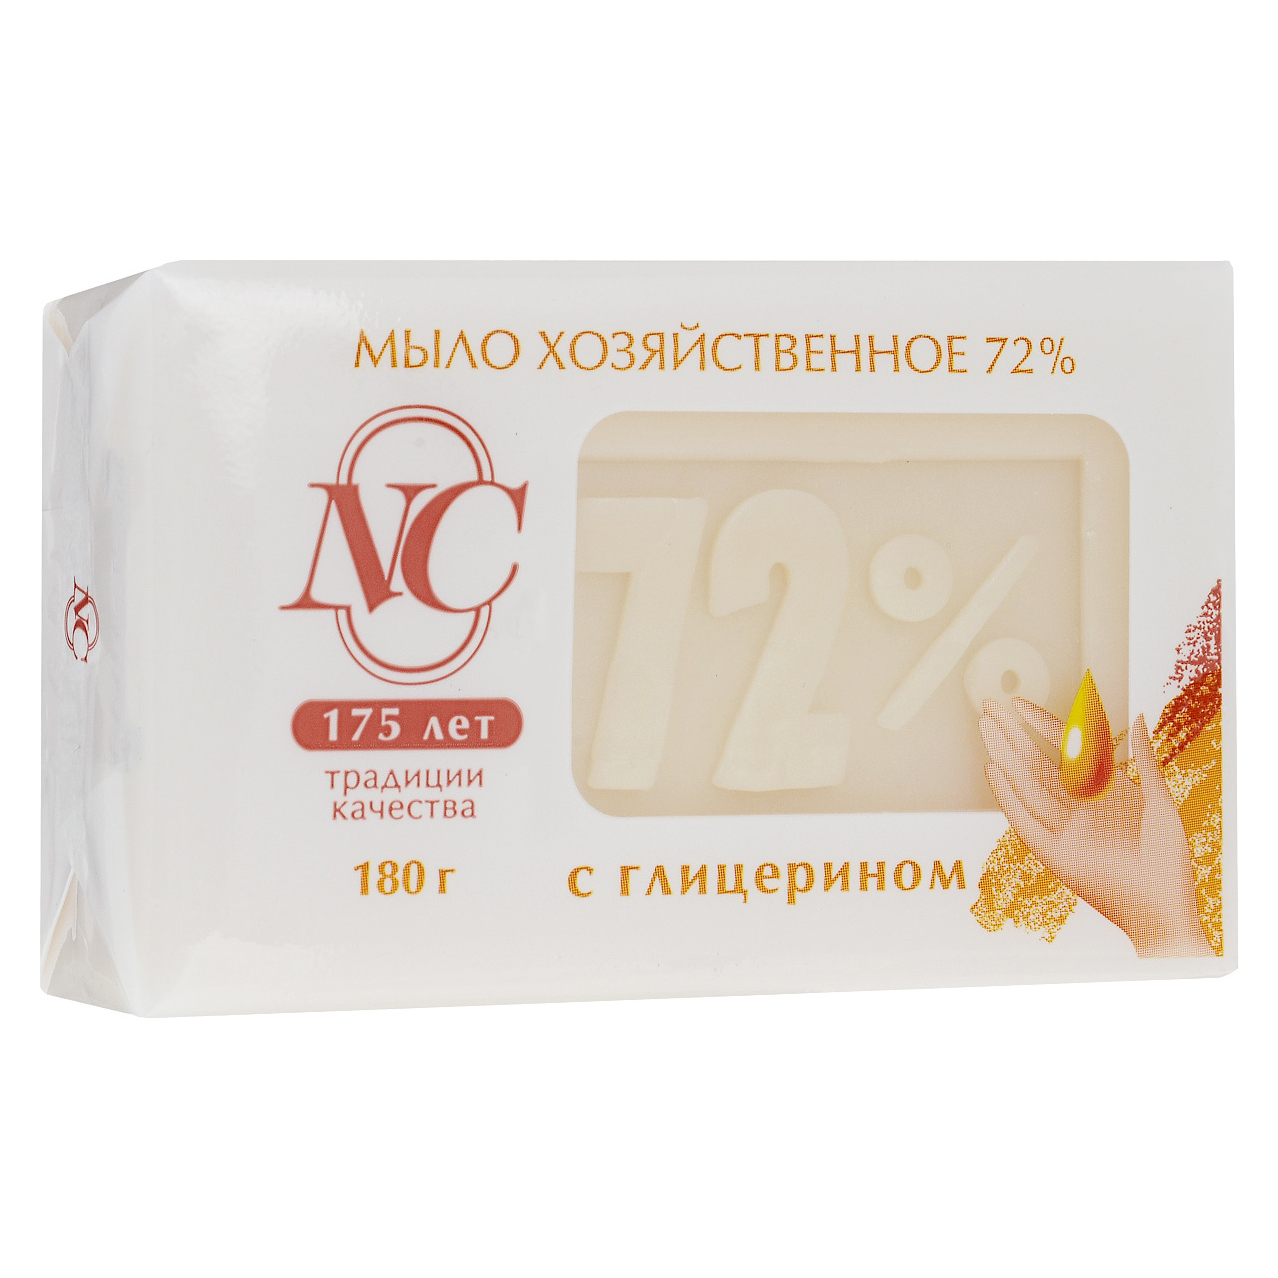 Традиционное хозяйственное мыло Невская косметика 72% с глицерином 180 г - фото 1